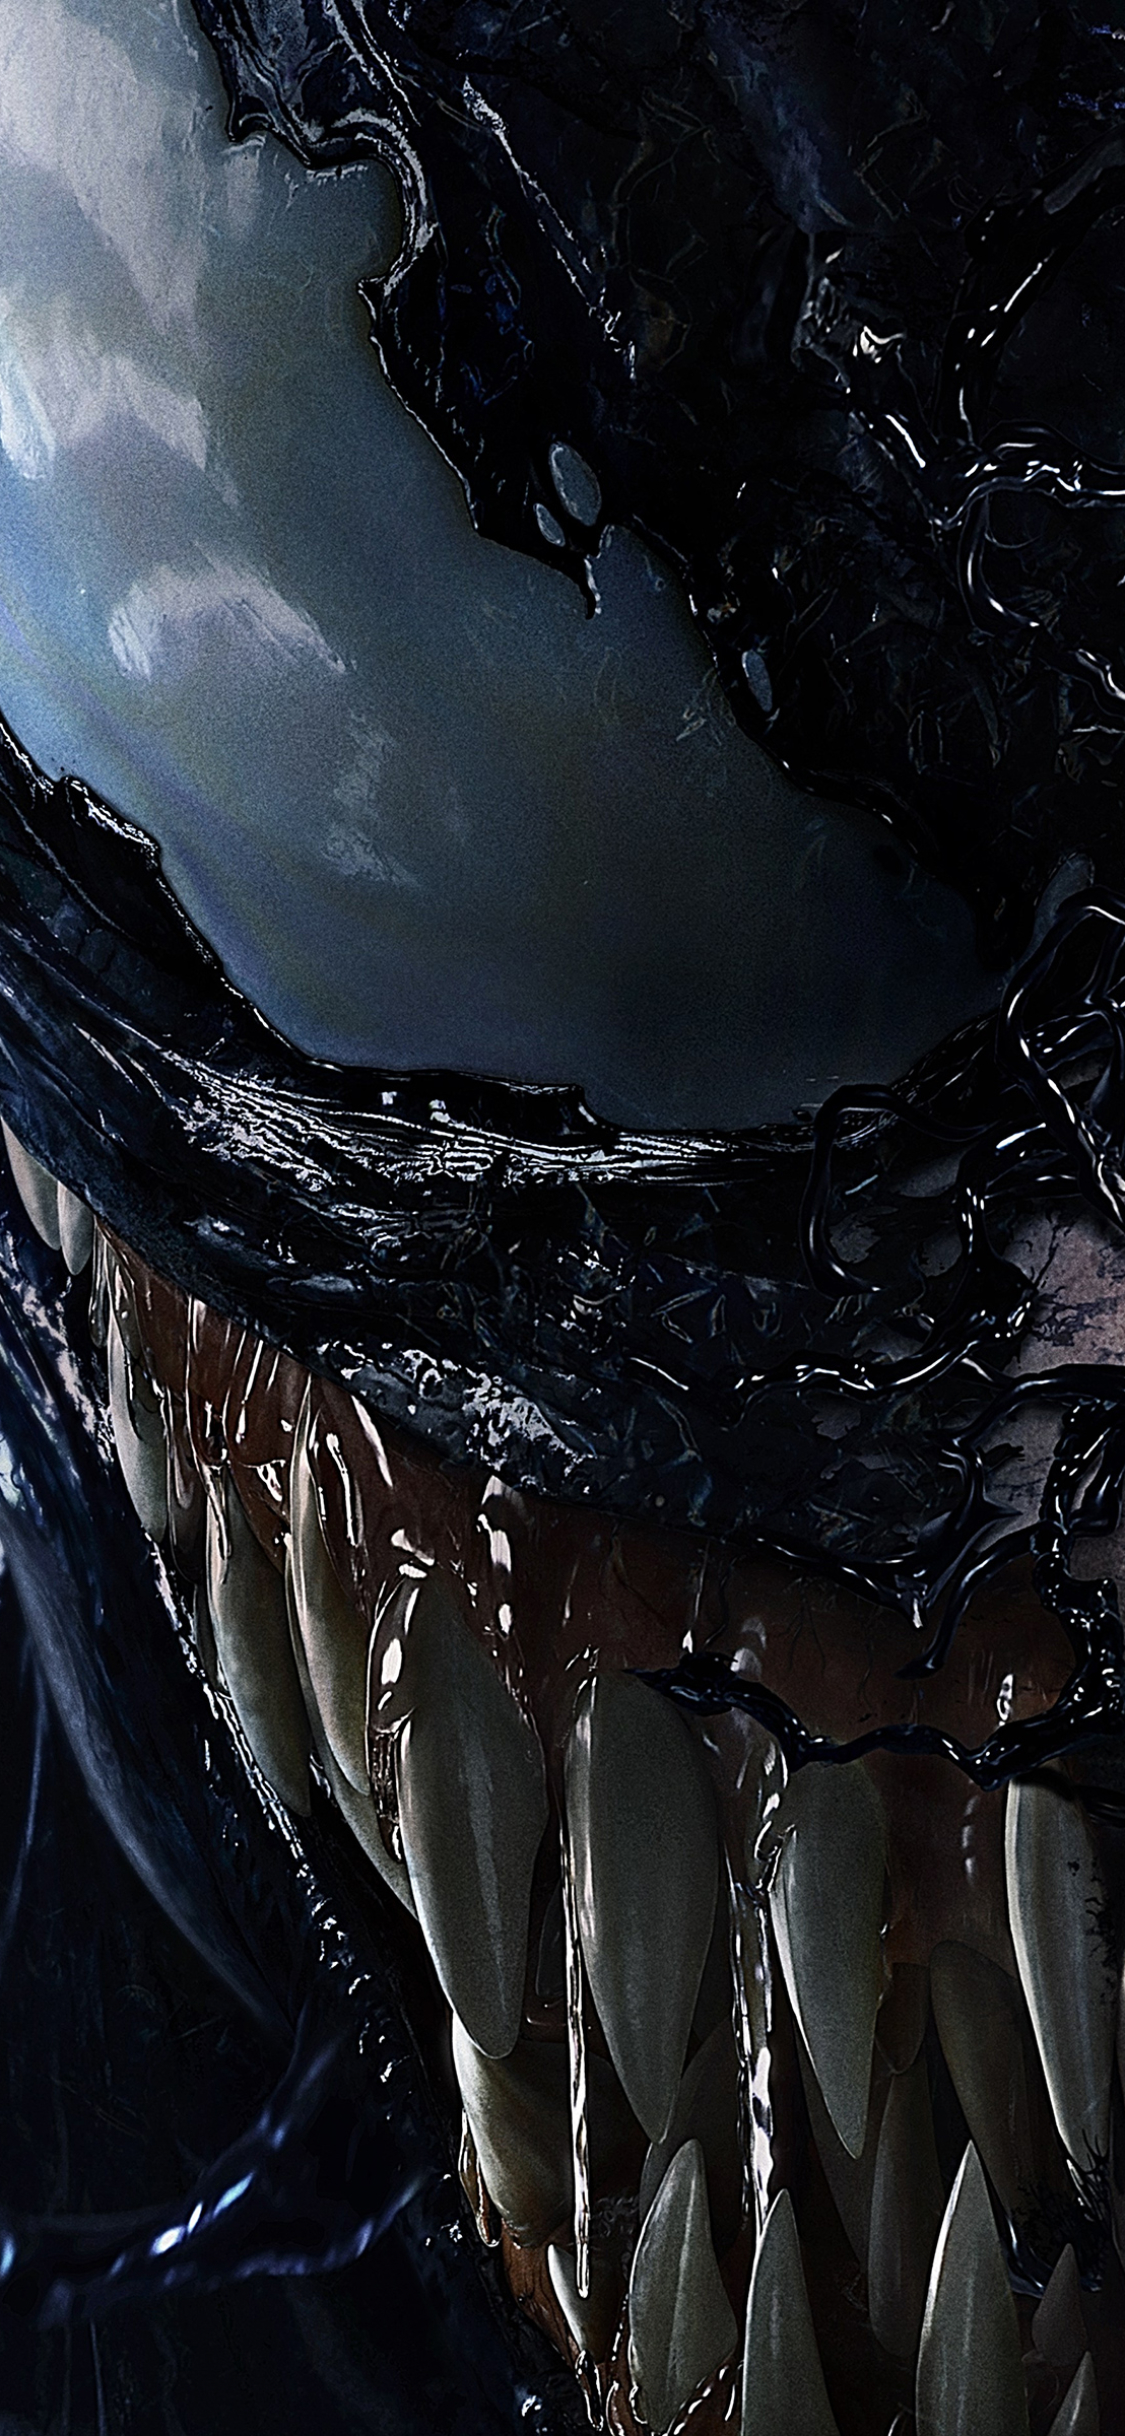 Descarga gratuita de fondo de pantalla para móvil de Cara, Películas, Venom.